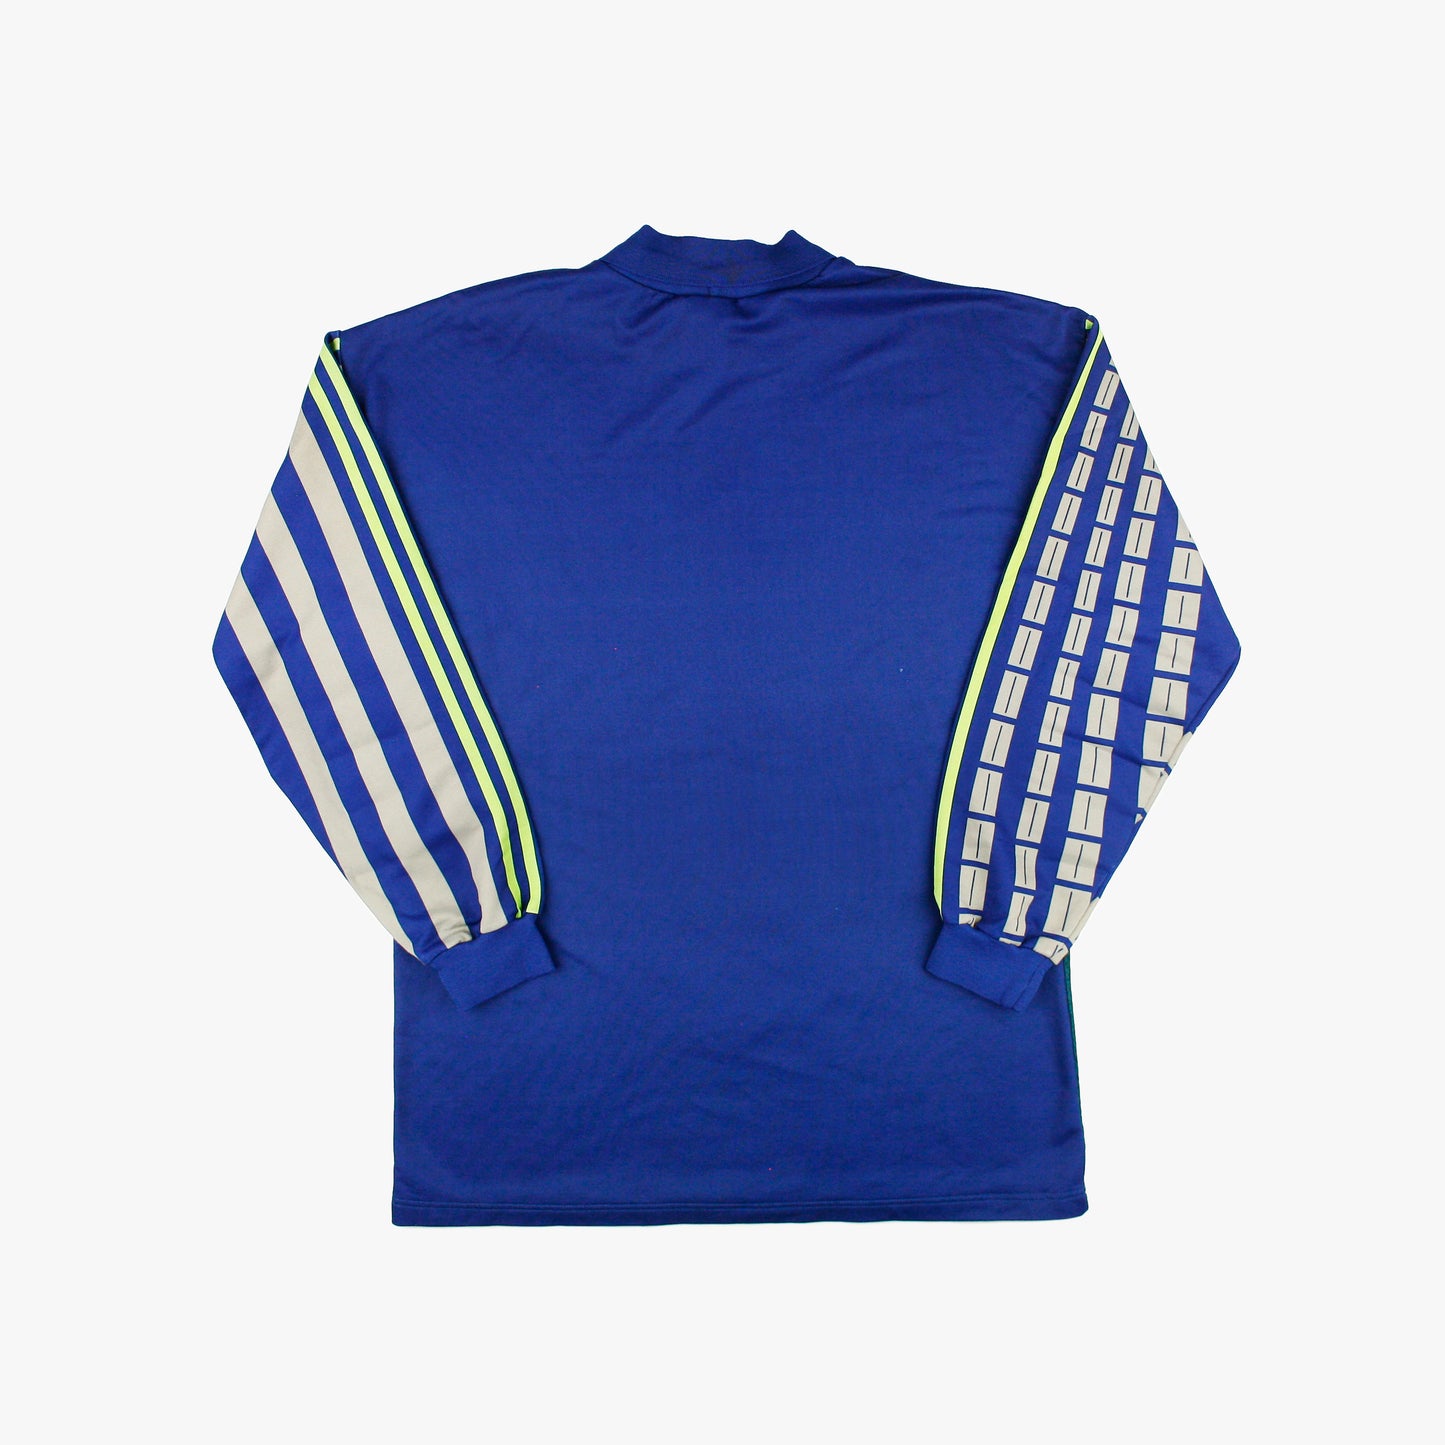 Adidas 90s • Goalkeeper Template Shirt • L